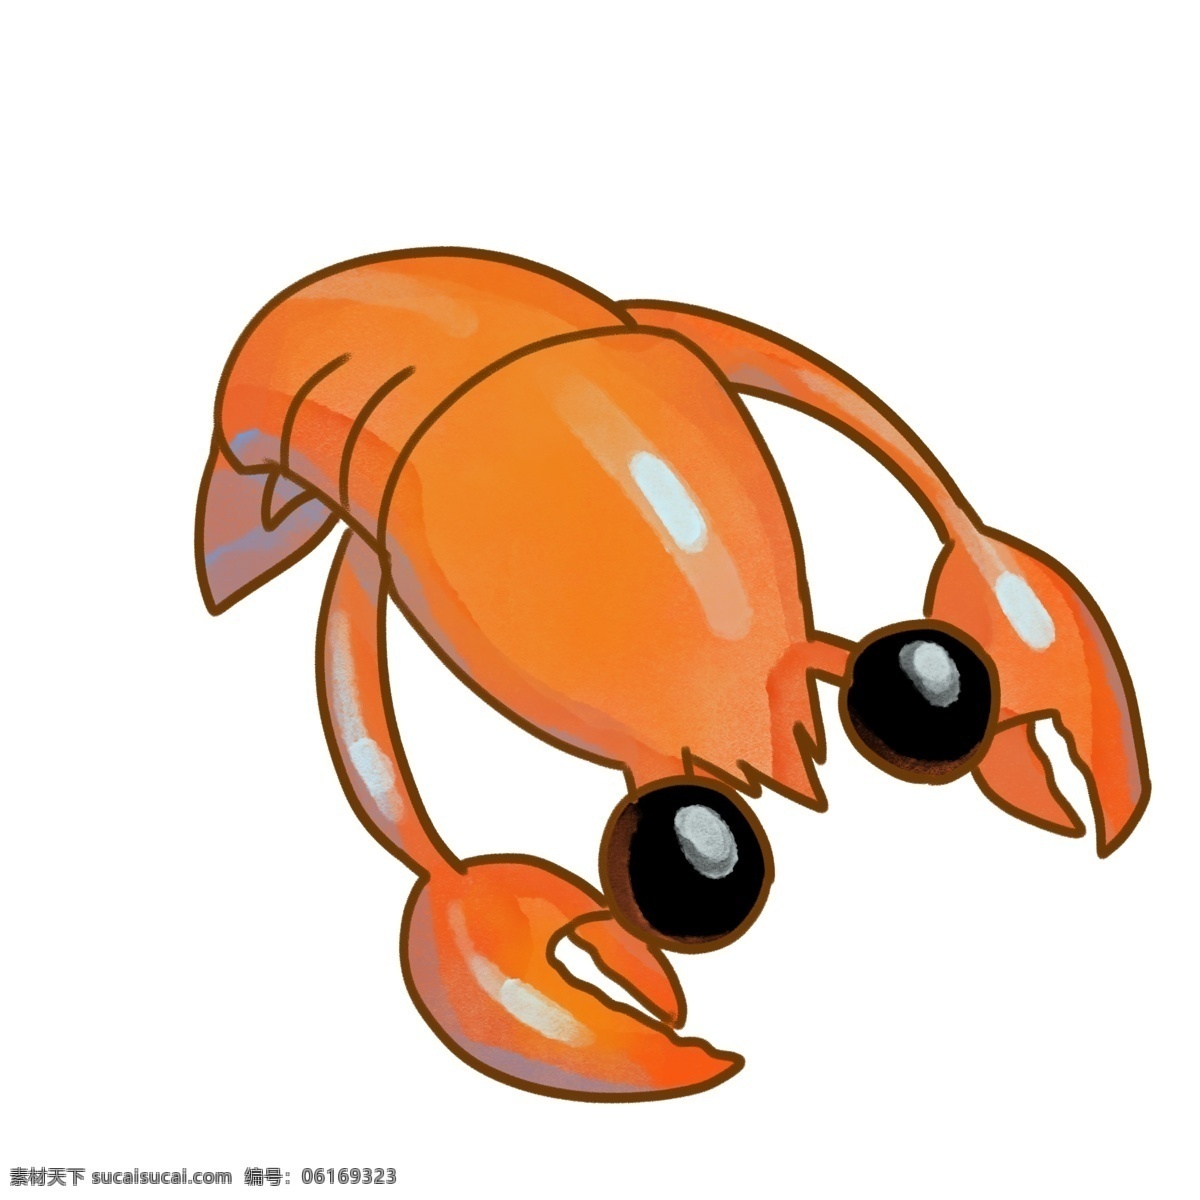 弯腰 动物 龙虾 插画 弯腰的龙虾 卡通插画 动物插画 龙虾插画 深海龙虾 淡水龙虾 大大的眼睛